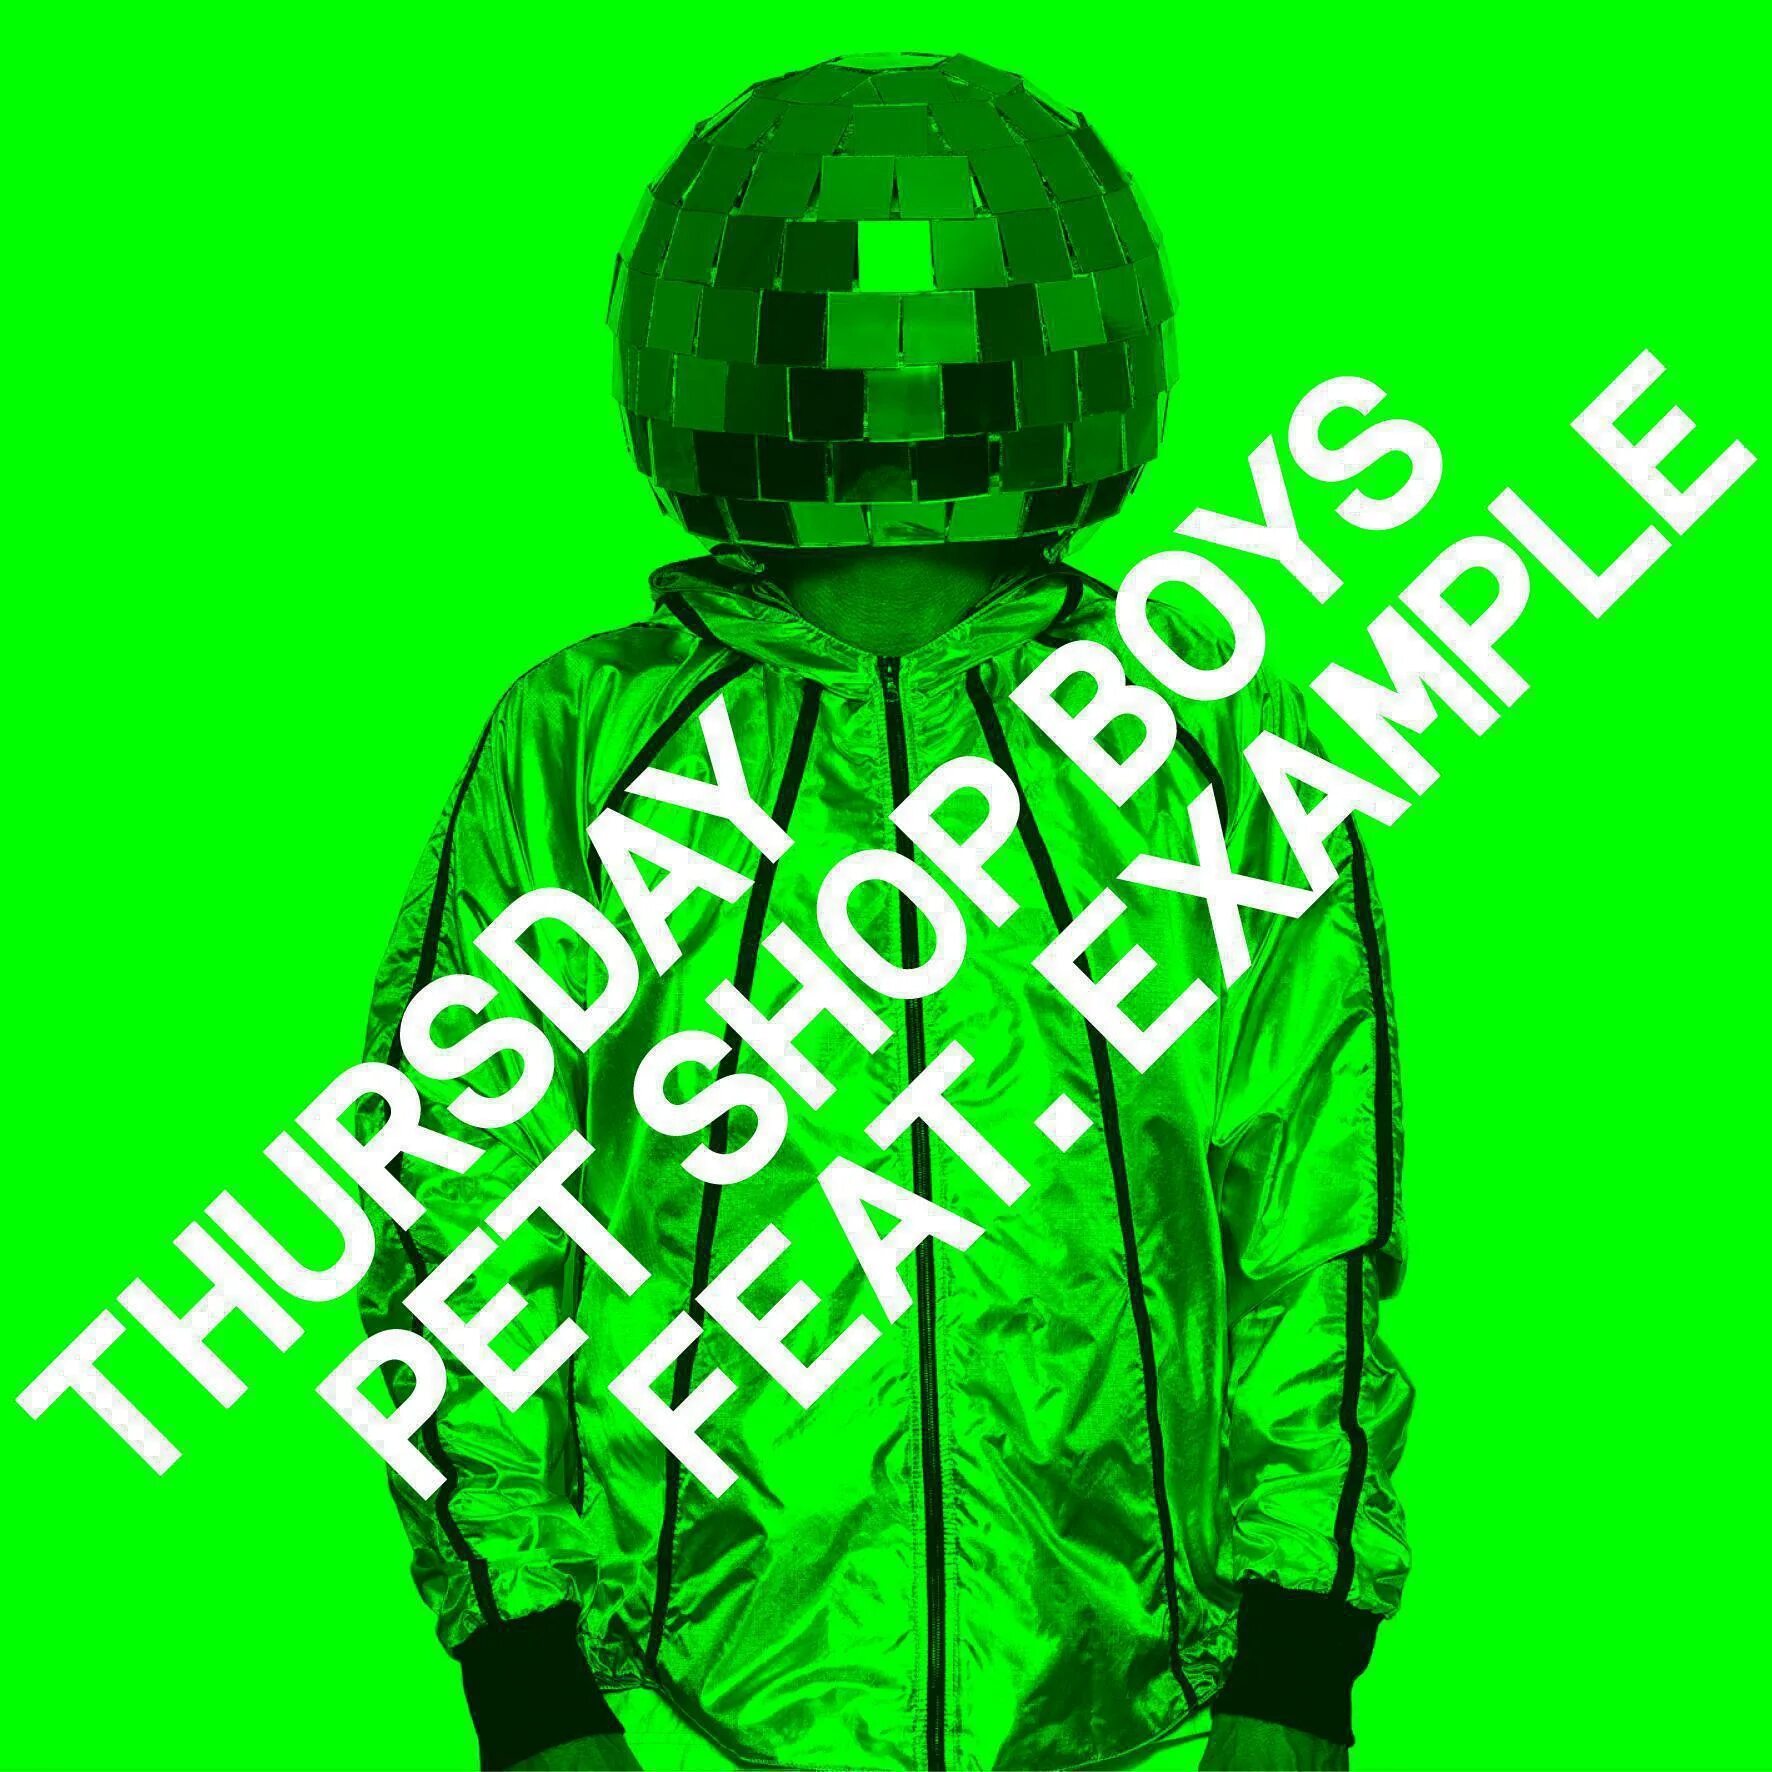 Pet shop boys remix. Pet shop boys. Pet shop boys Thursday. Pet shop boys Remixes. Pet shop boys Thursday Remixes.